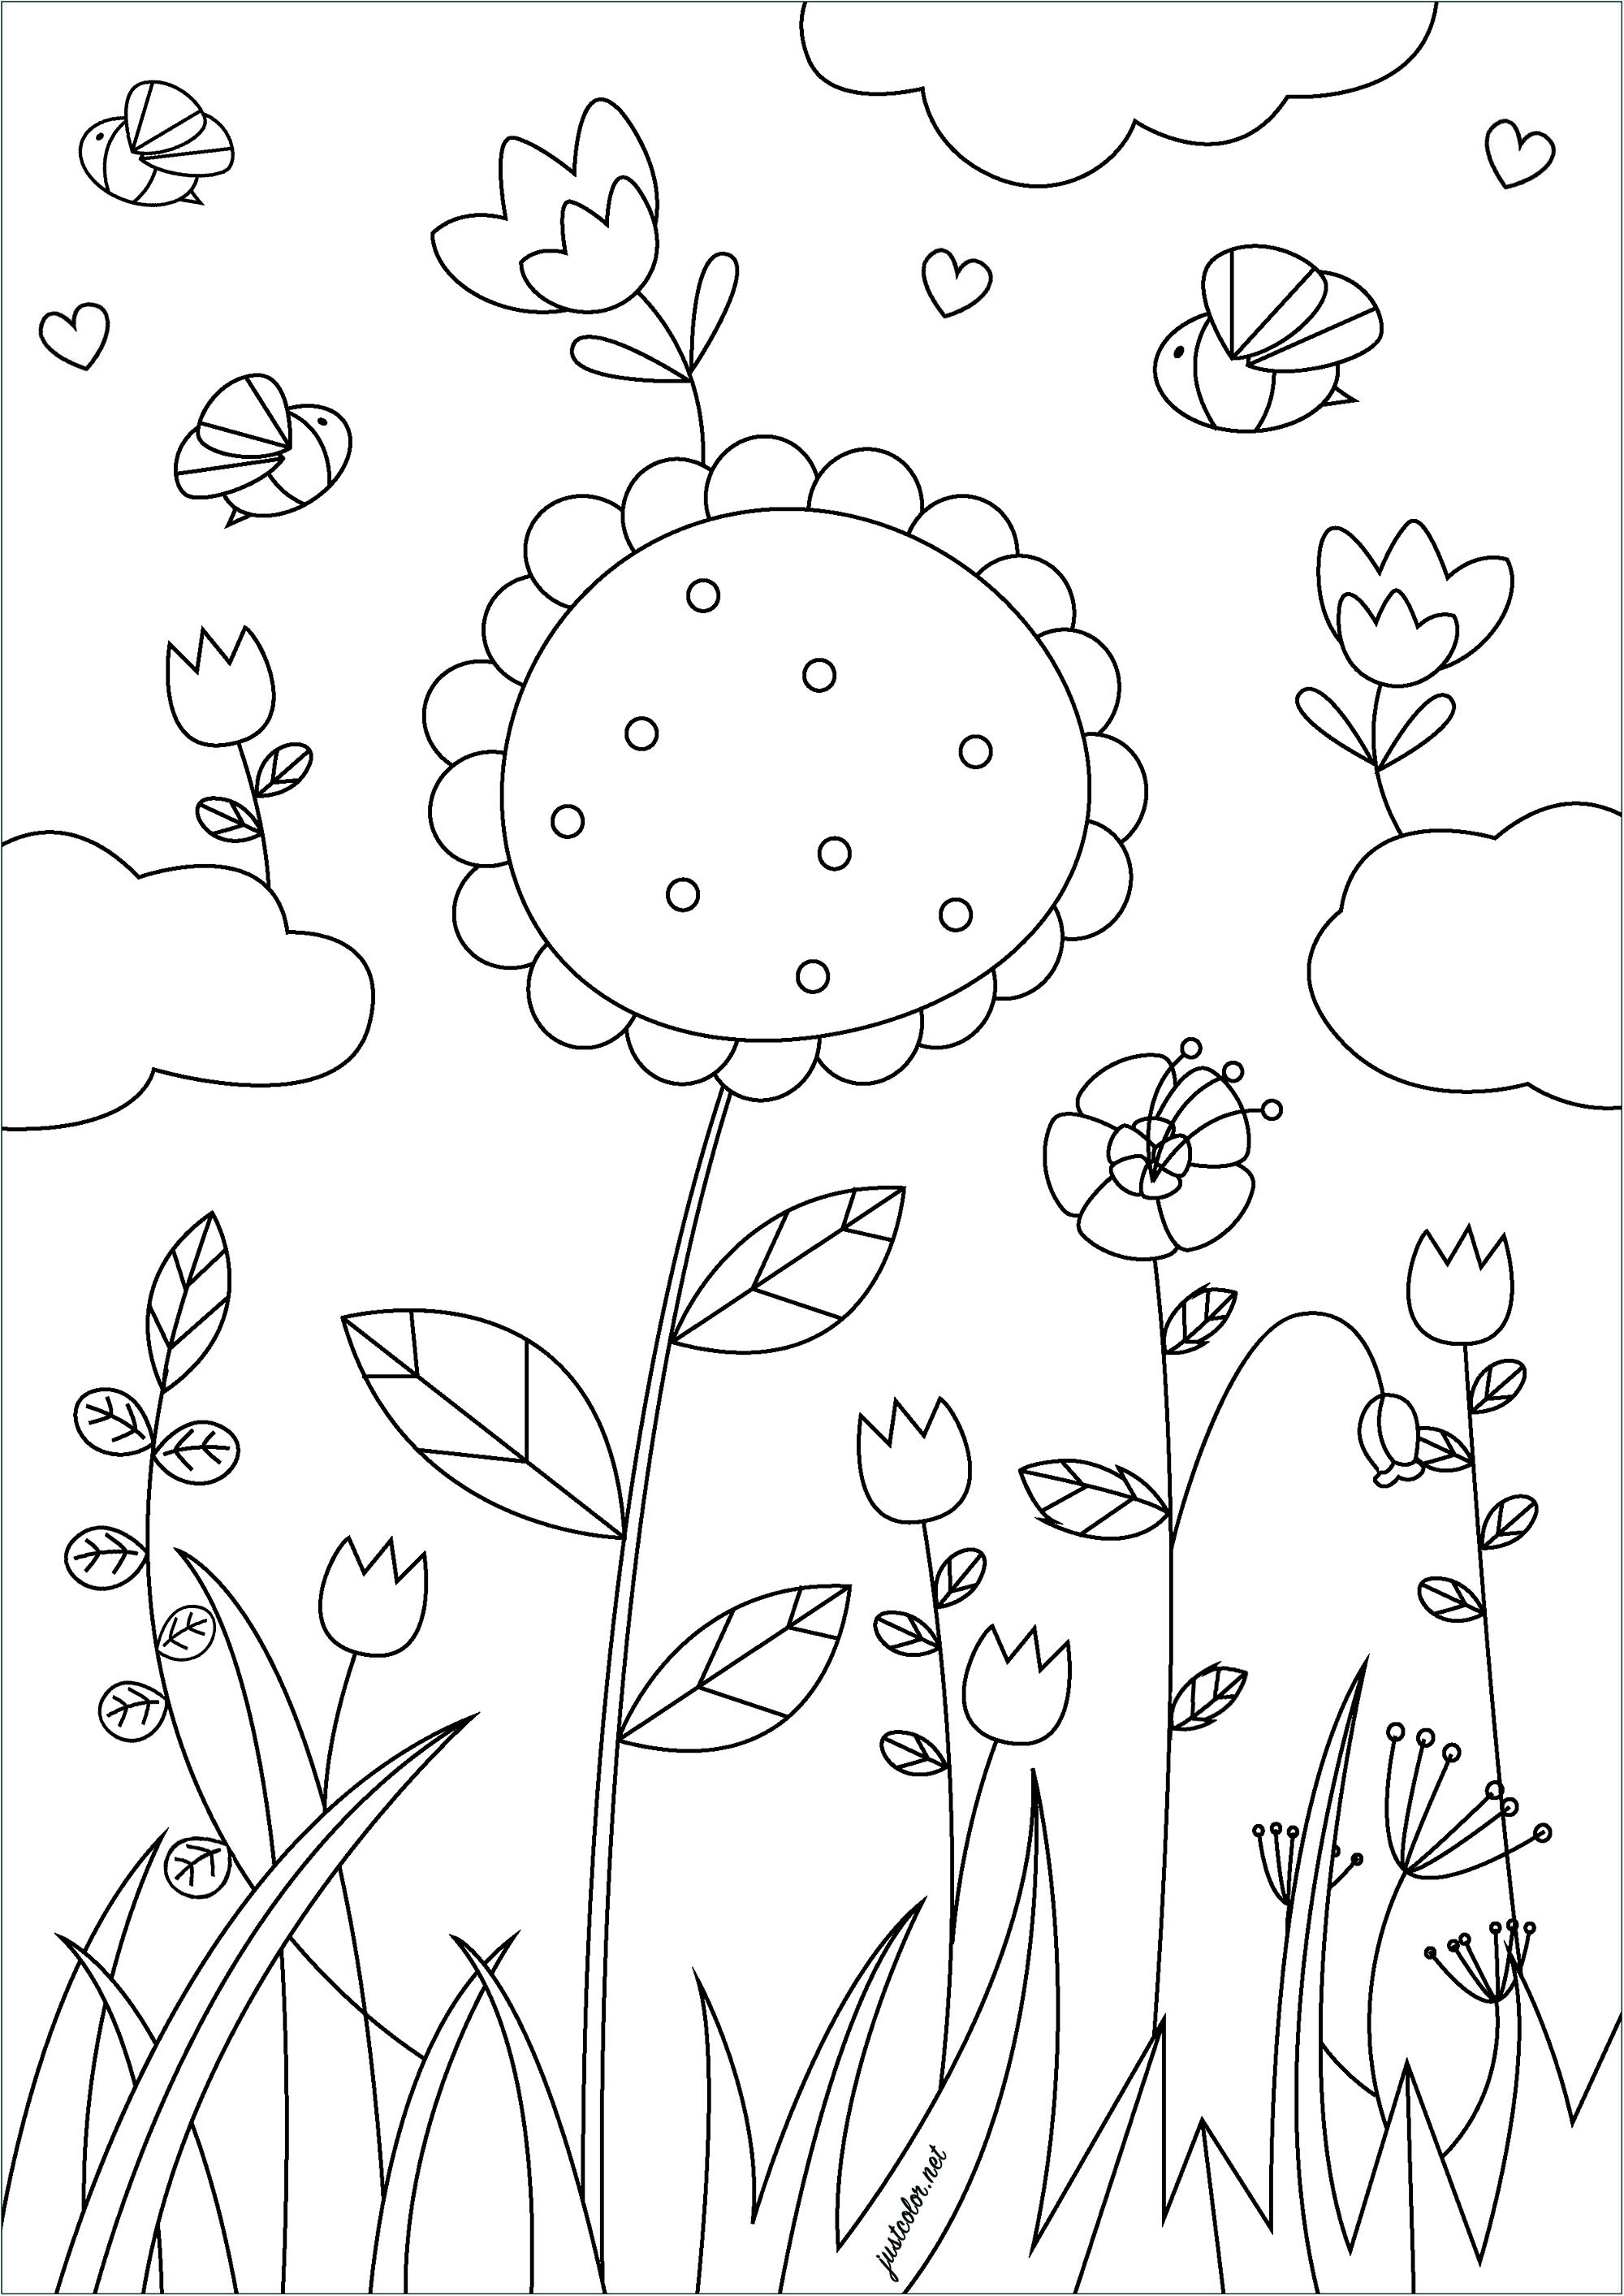 Flores bonitas ao vento. Esta página para colorir intitulada 'Flores da primavera' apresenta várias flores a desabrochar num campo de vegetação.